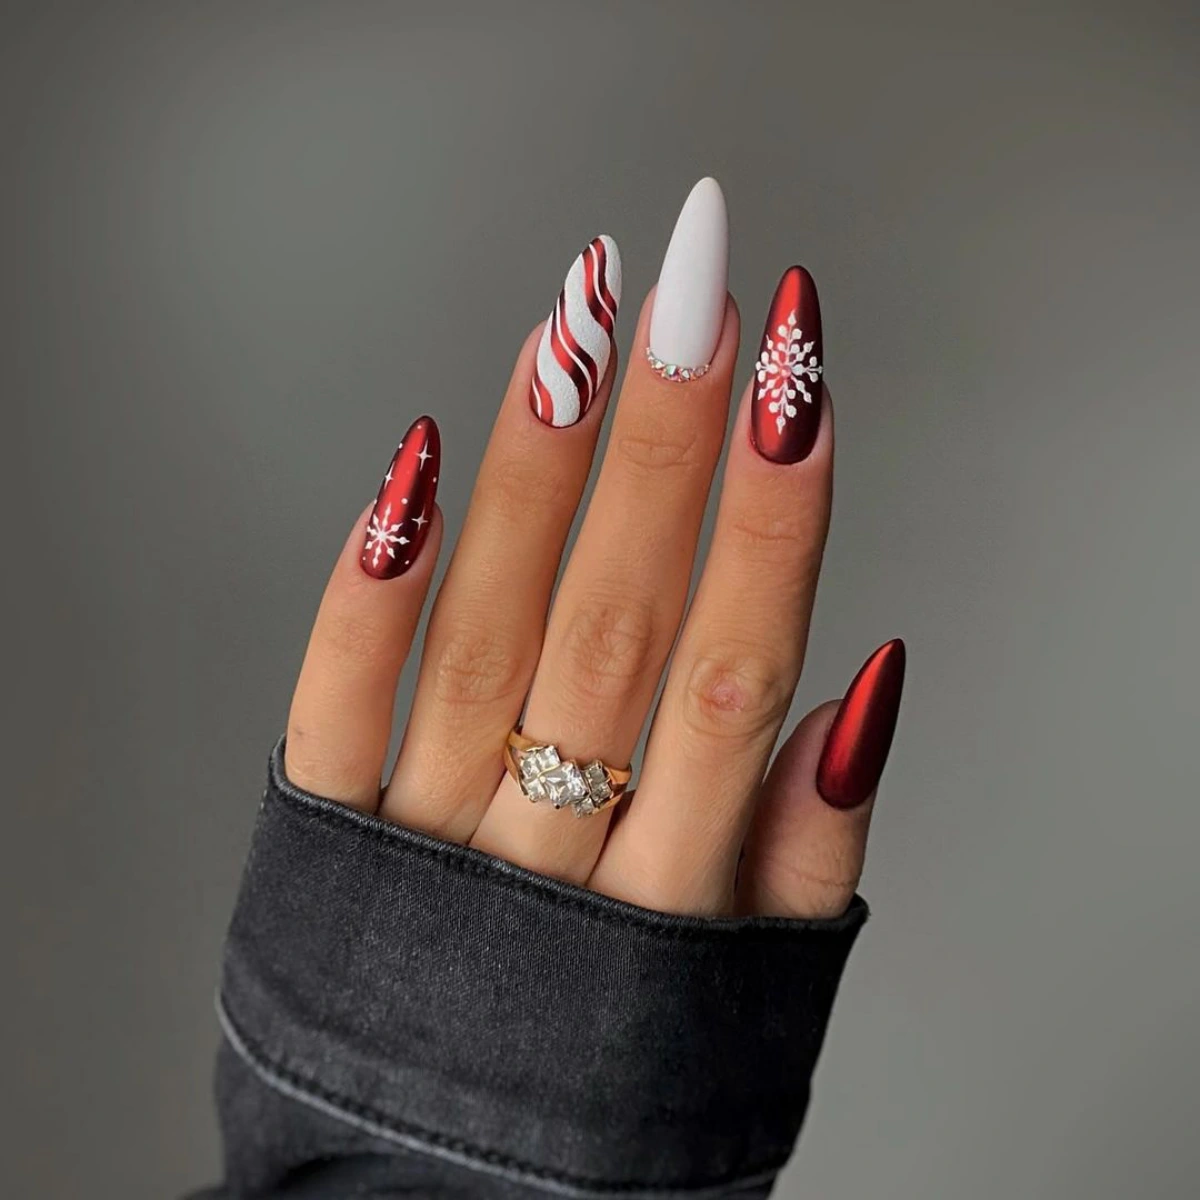 nail art chic et glamour manucure ongles en rouge et blanc sucre d orge